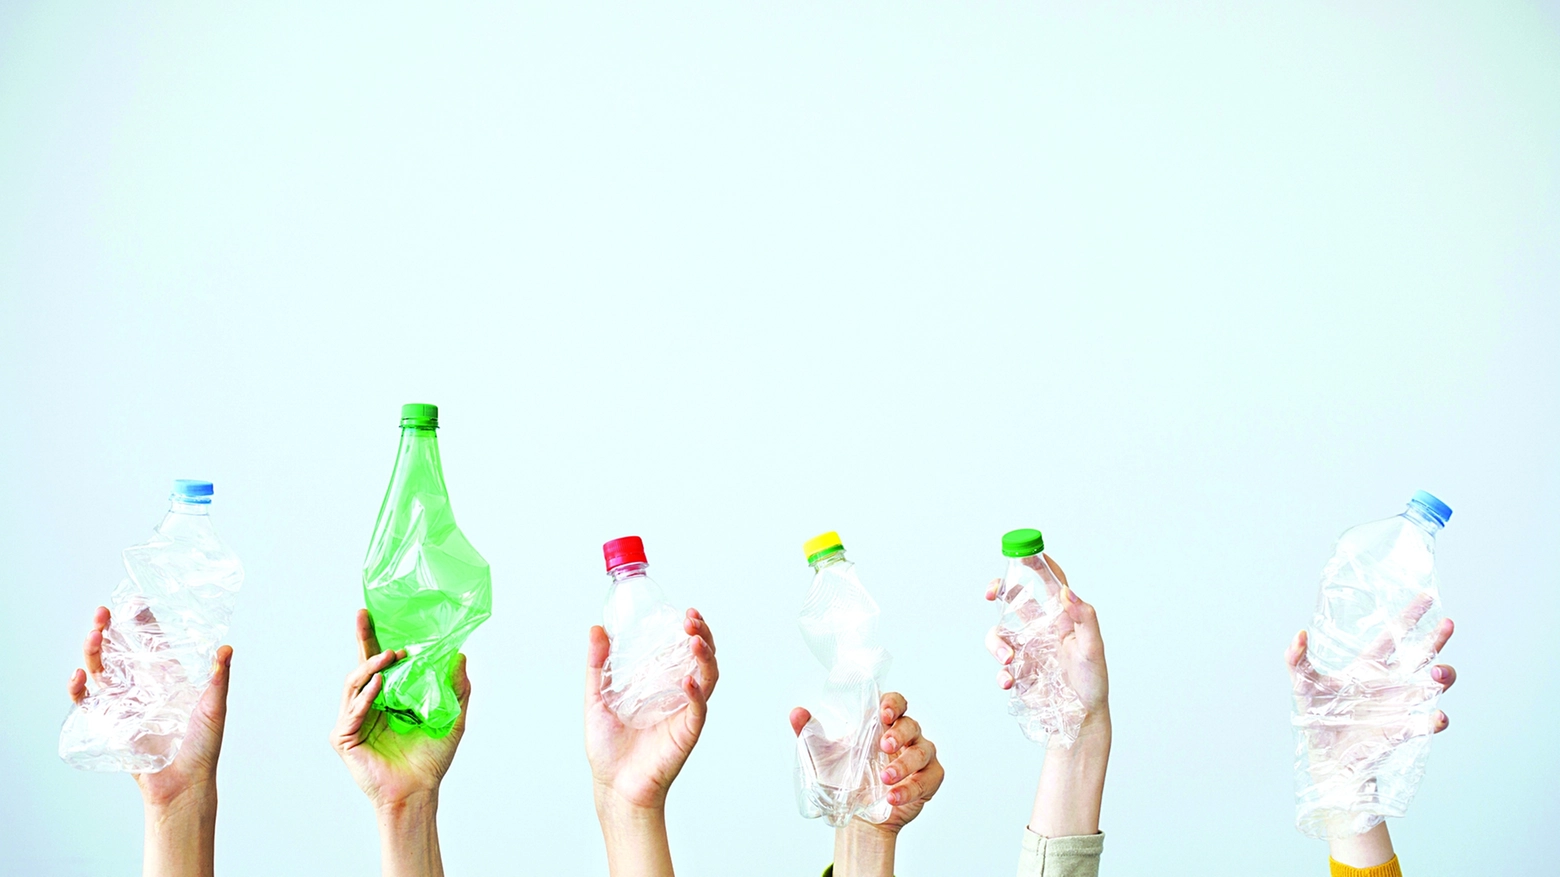 L'organizzazione ha eliminato le bottiglie di plastica e altro materiale inquinante